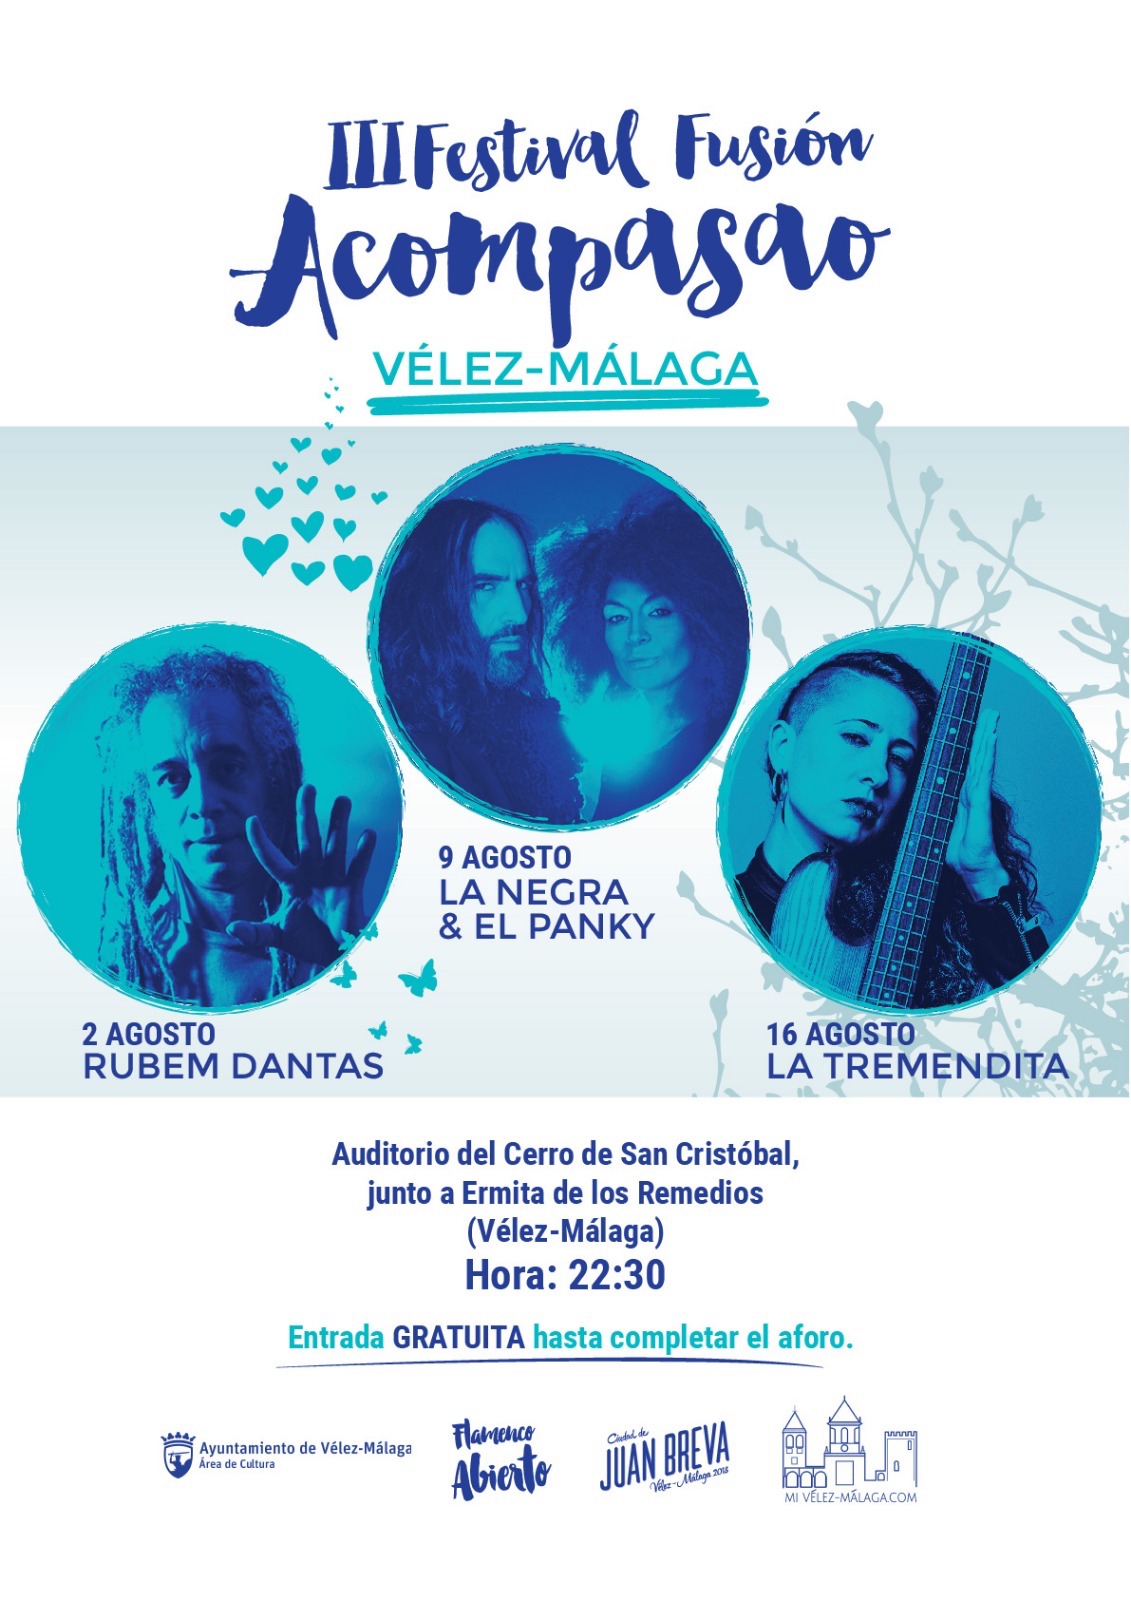 III Festival Acompasao de Flamenco-fusión en Vélez-Málaga